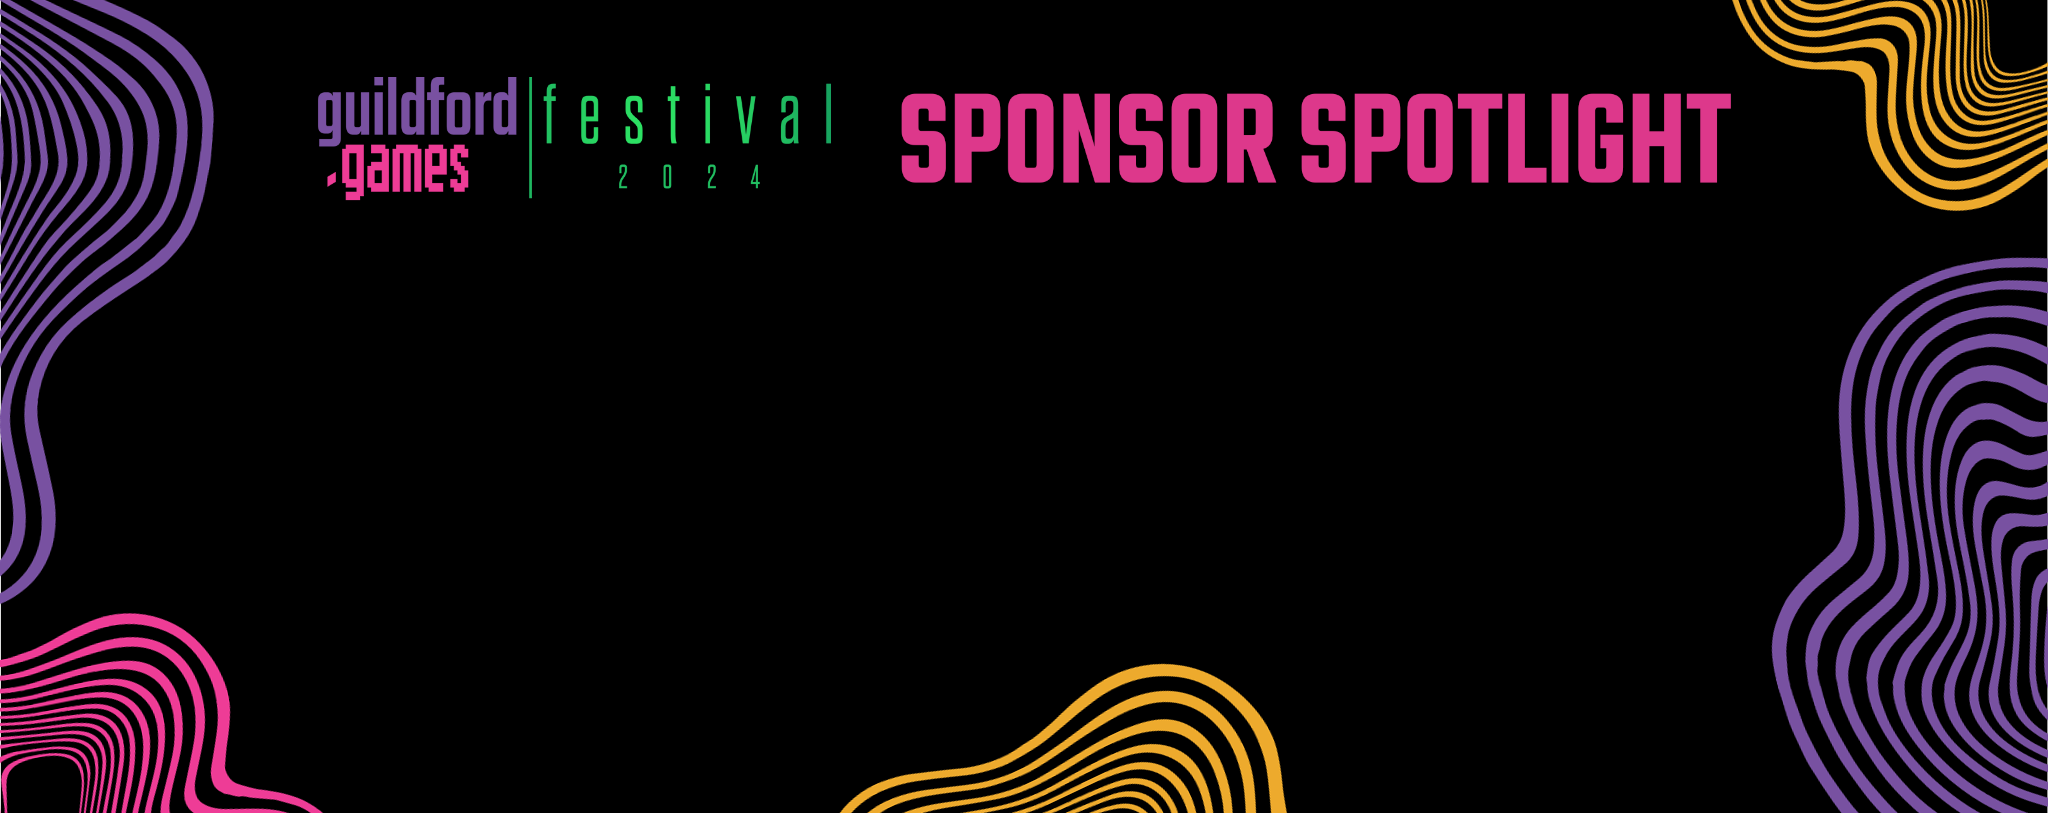 G.G Festival 2024 Sponsor Spotlight Banner